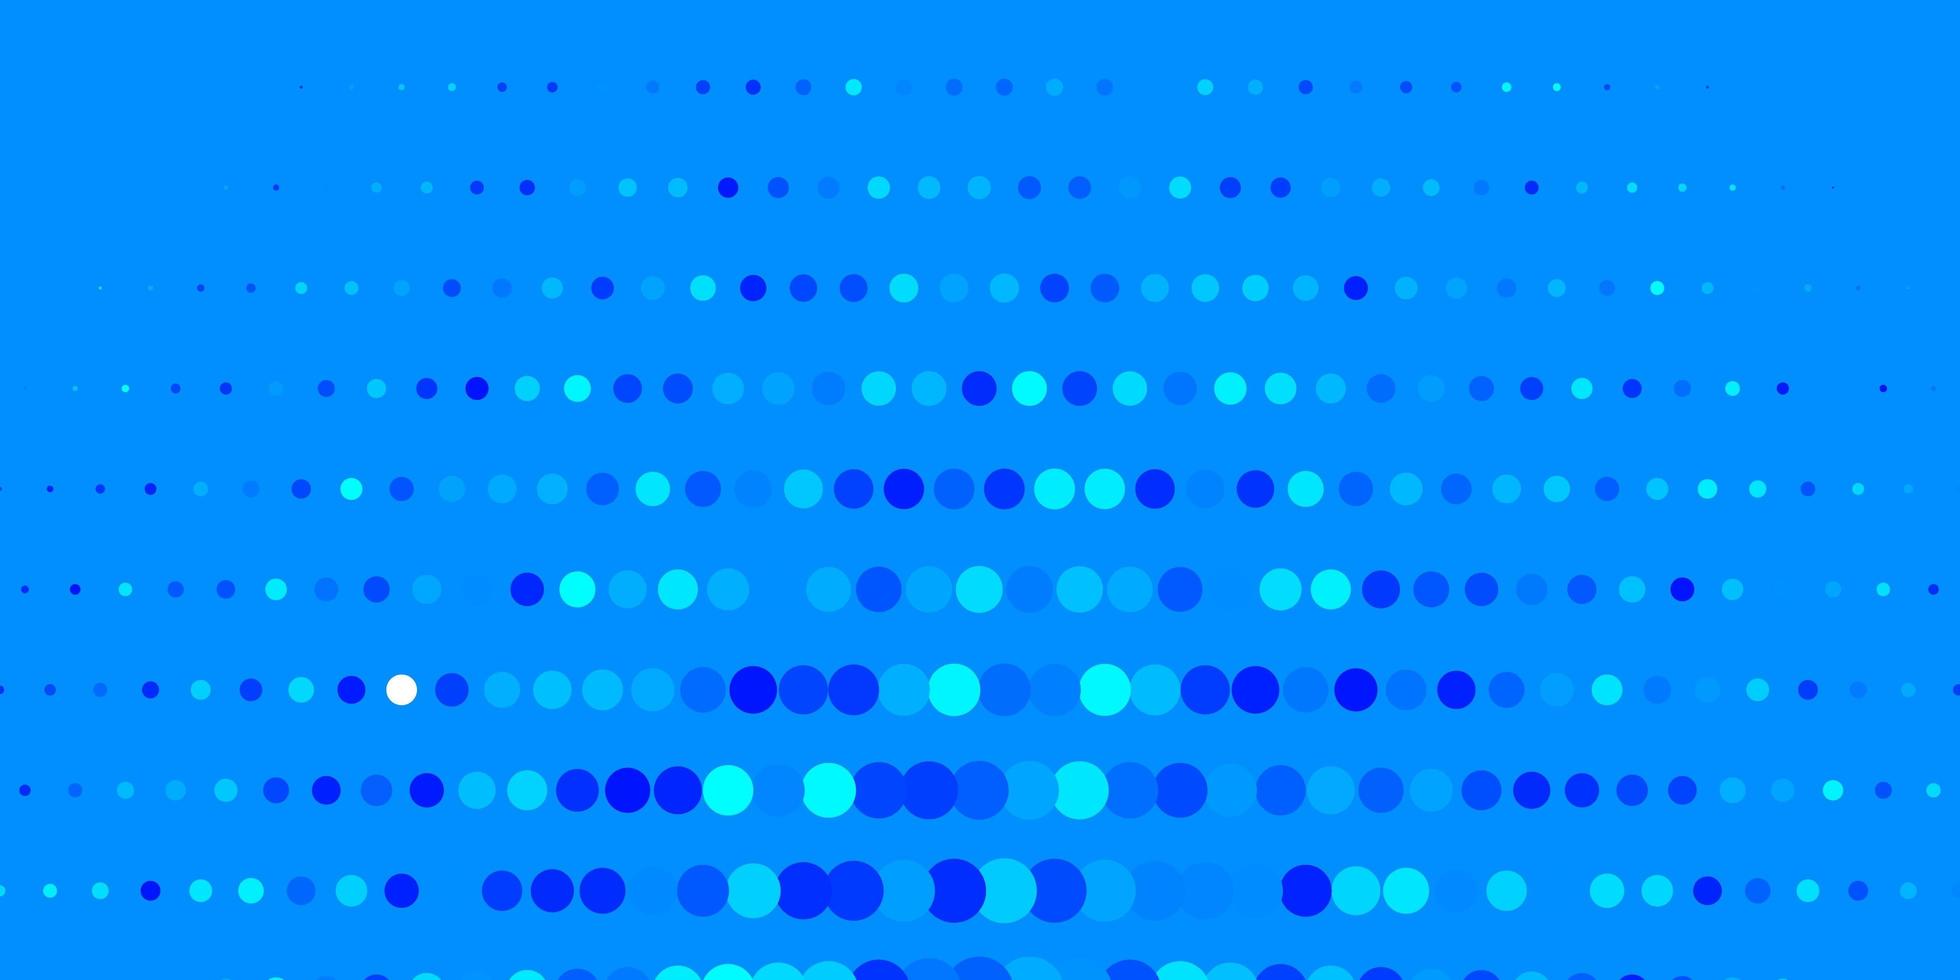 toile de fond de vecteur bleu clair avec des cercles.